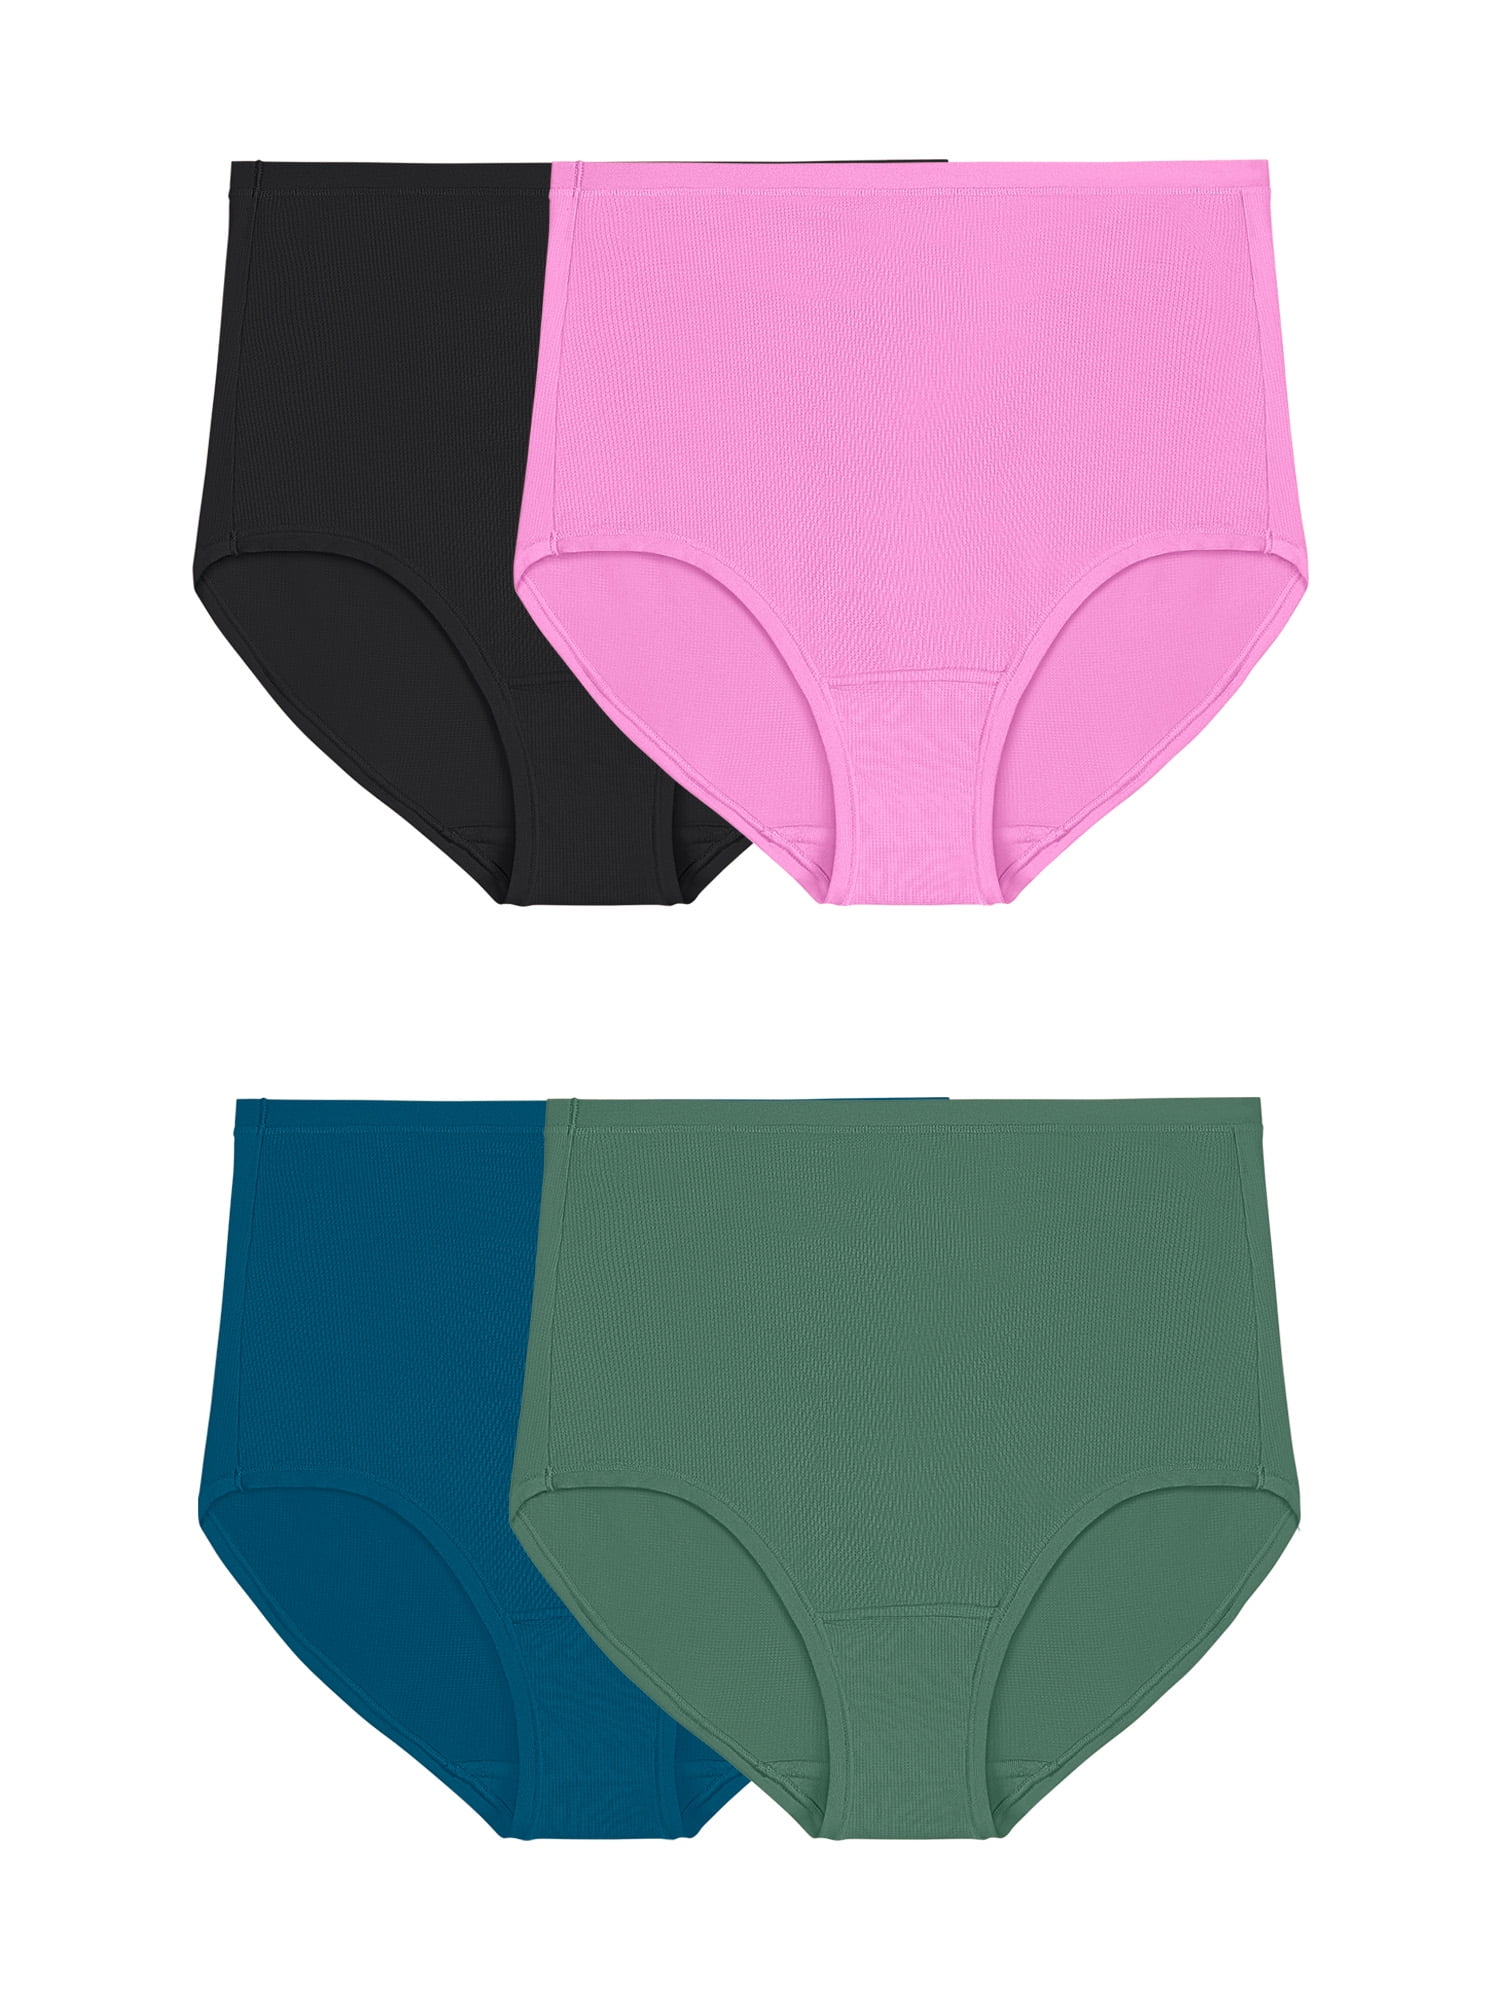 Fruit of the Loom Women's Microfiber Brief Underwear, 6 Pack 